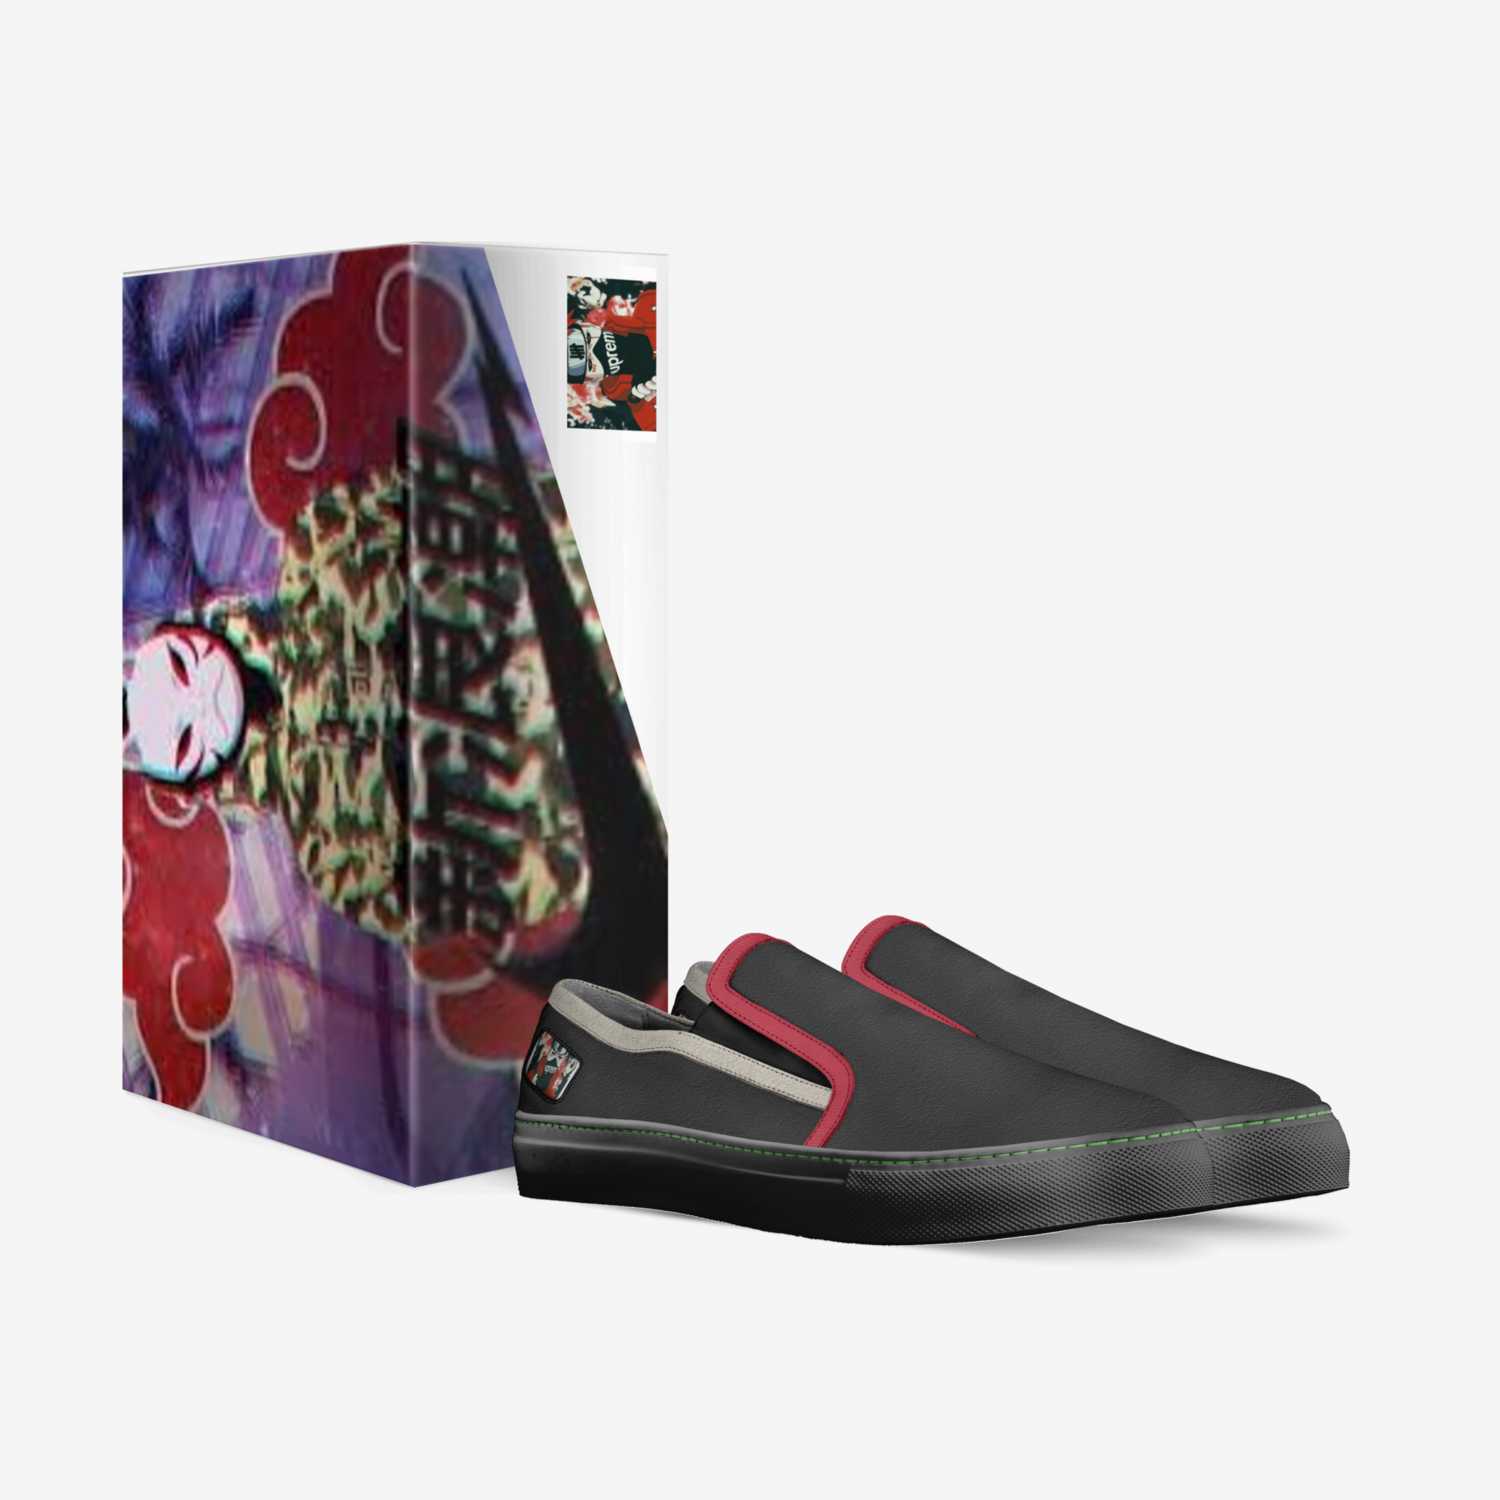 Sosa custom made in Italy shoes by Kingsosa Molina | Box view